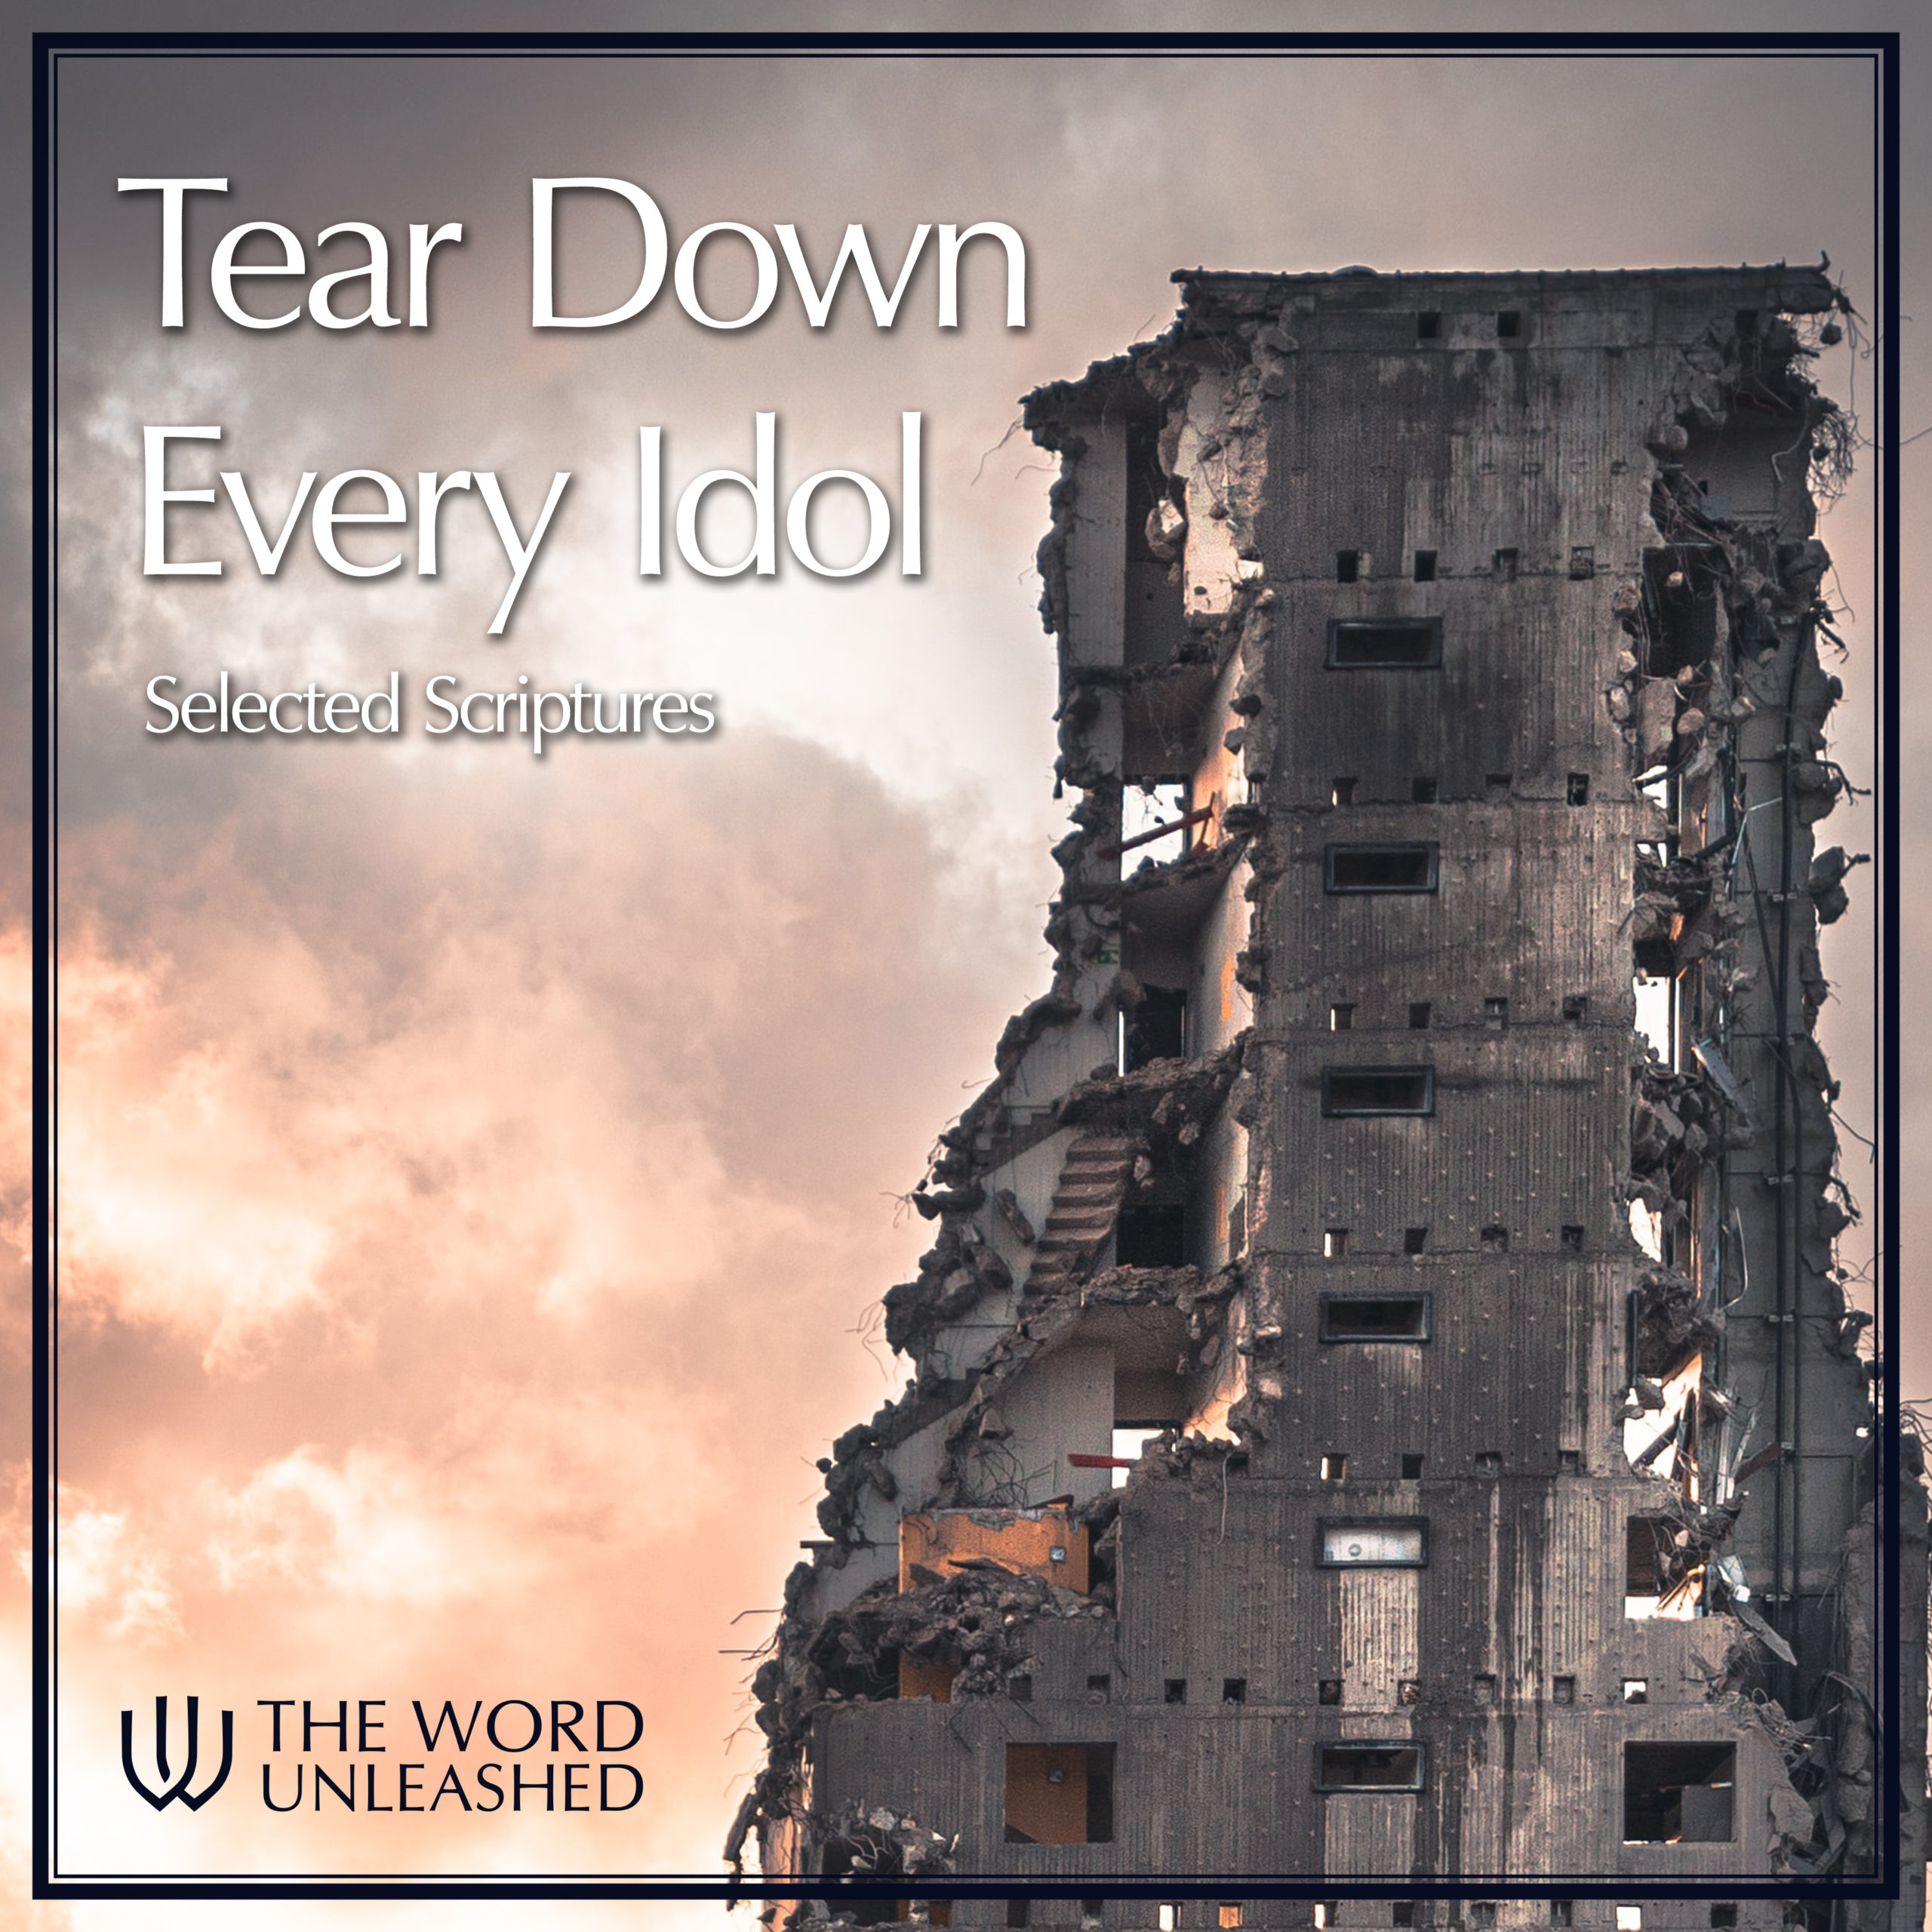 Tear Down Every Idol